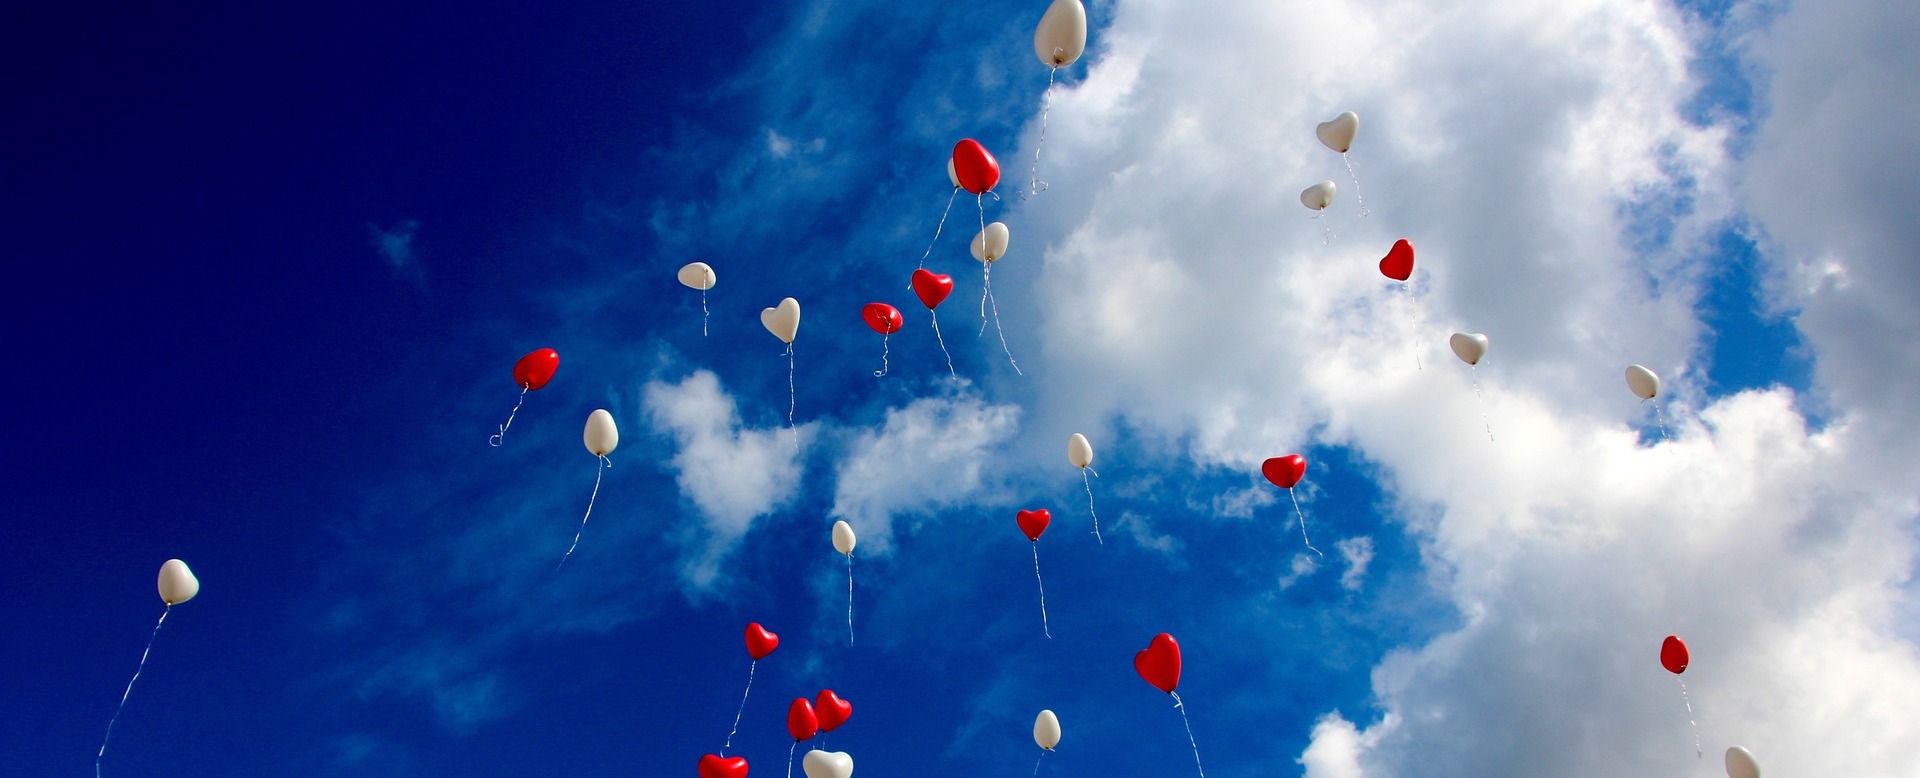 Herzballons in rot und weiß vor blauem Himmel.